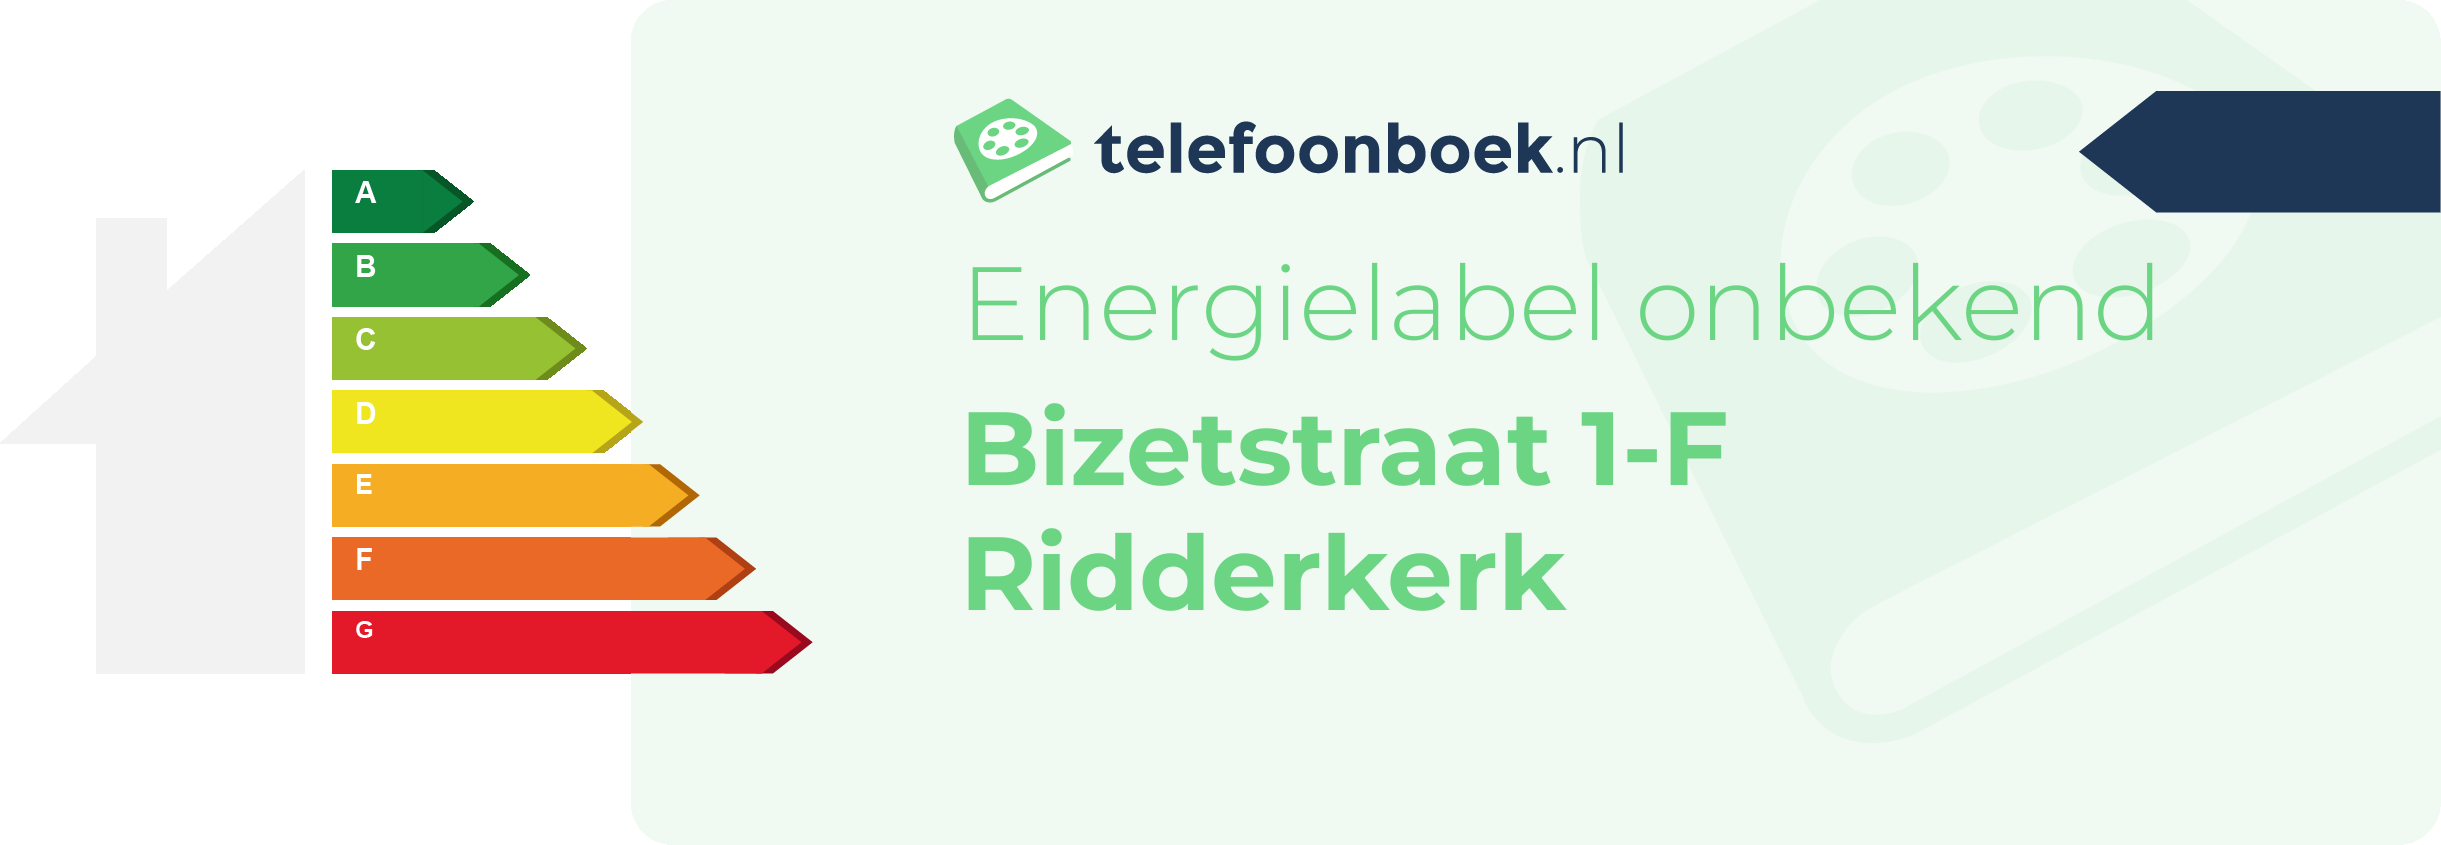 Energielabel Bizetstraat 1-F Ridderkerk